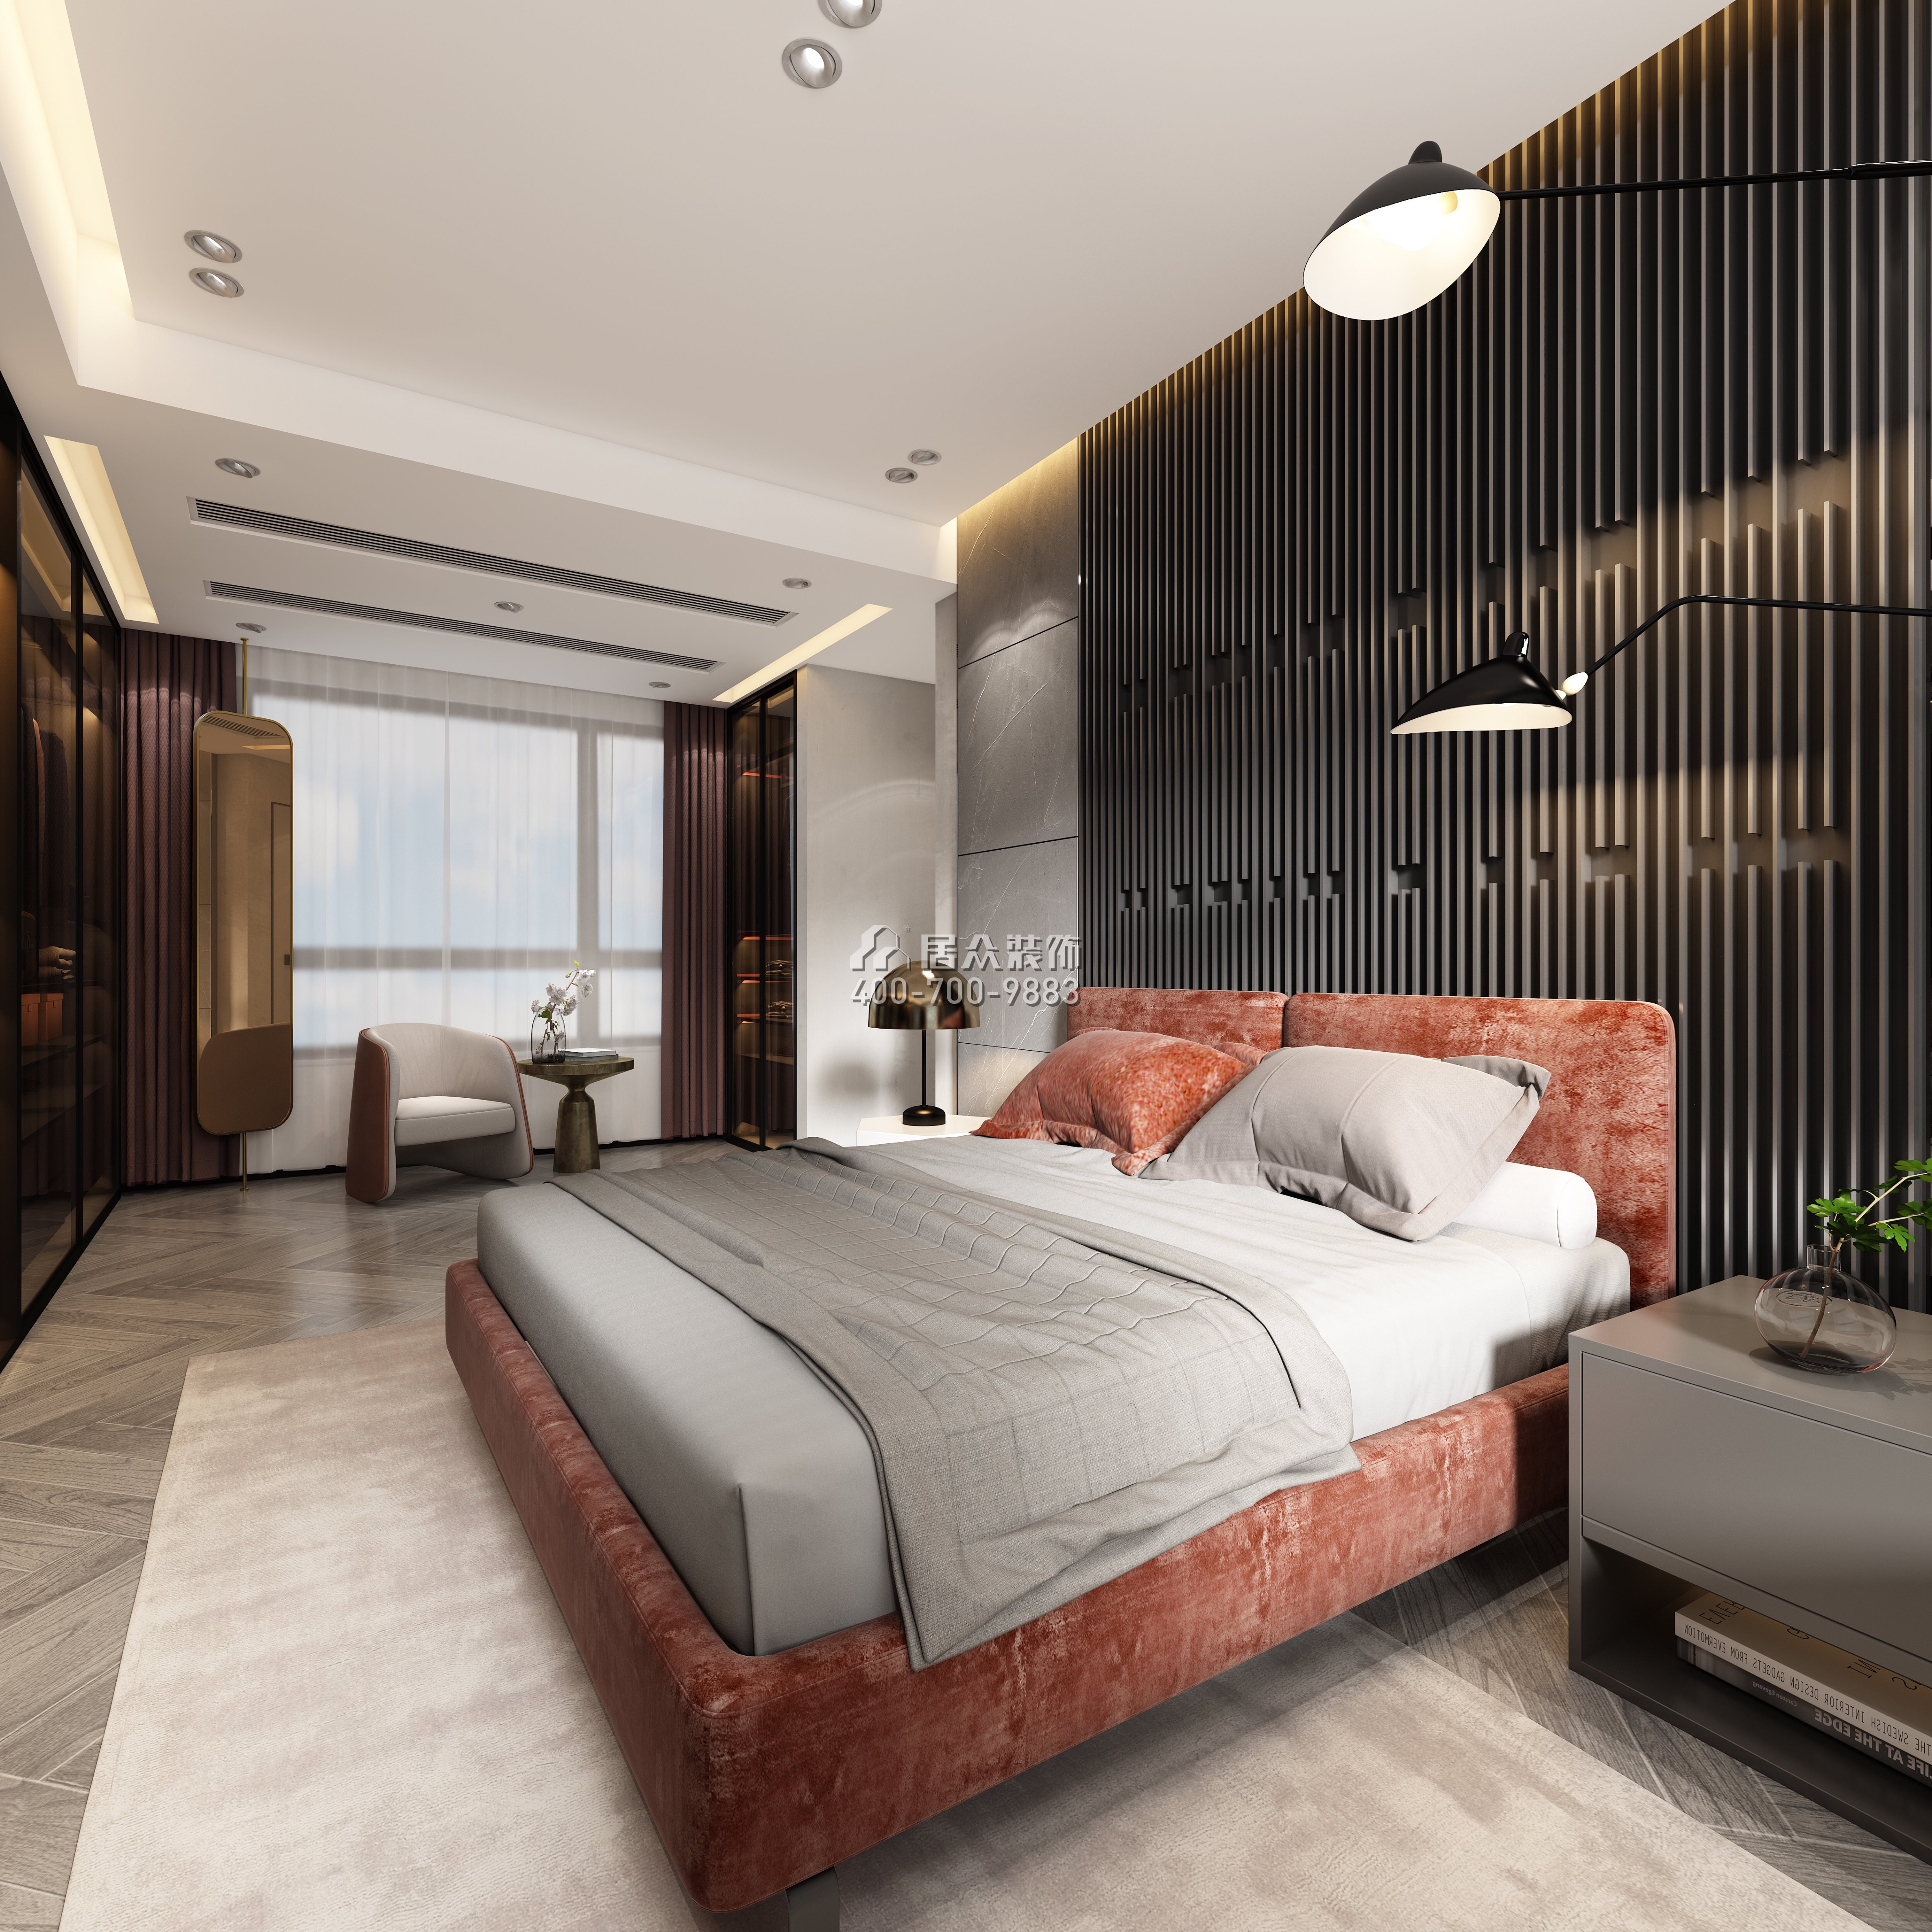 寶生midtown 135平方米現代簡約風格平層戶型臥室裝修效果圖